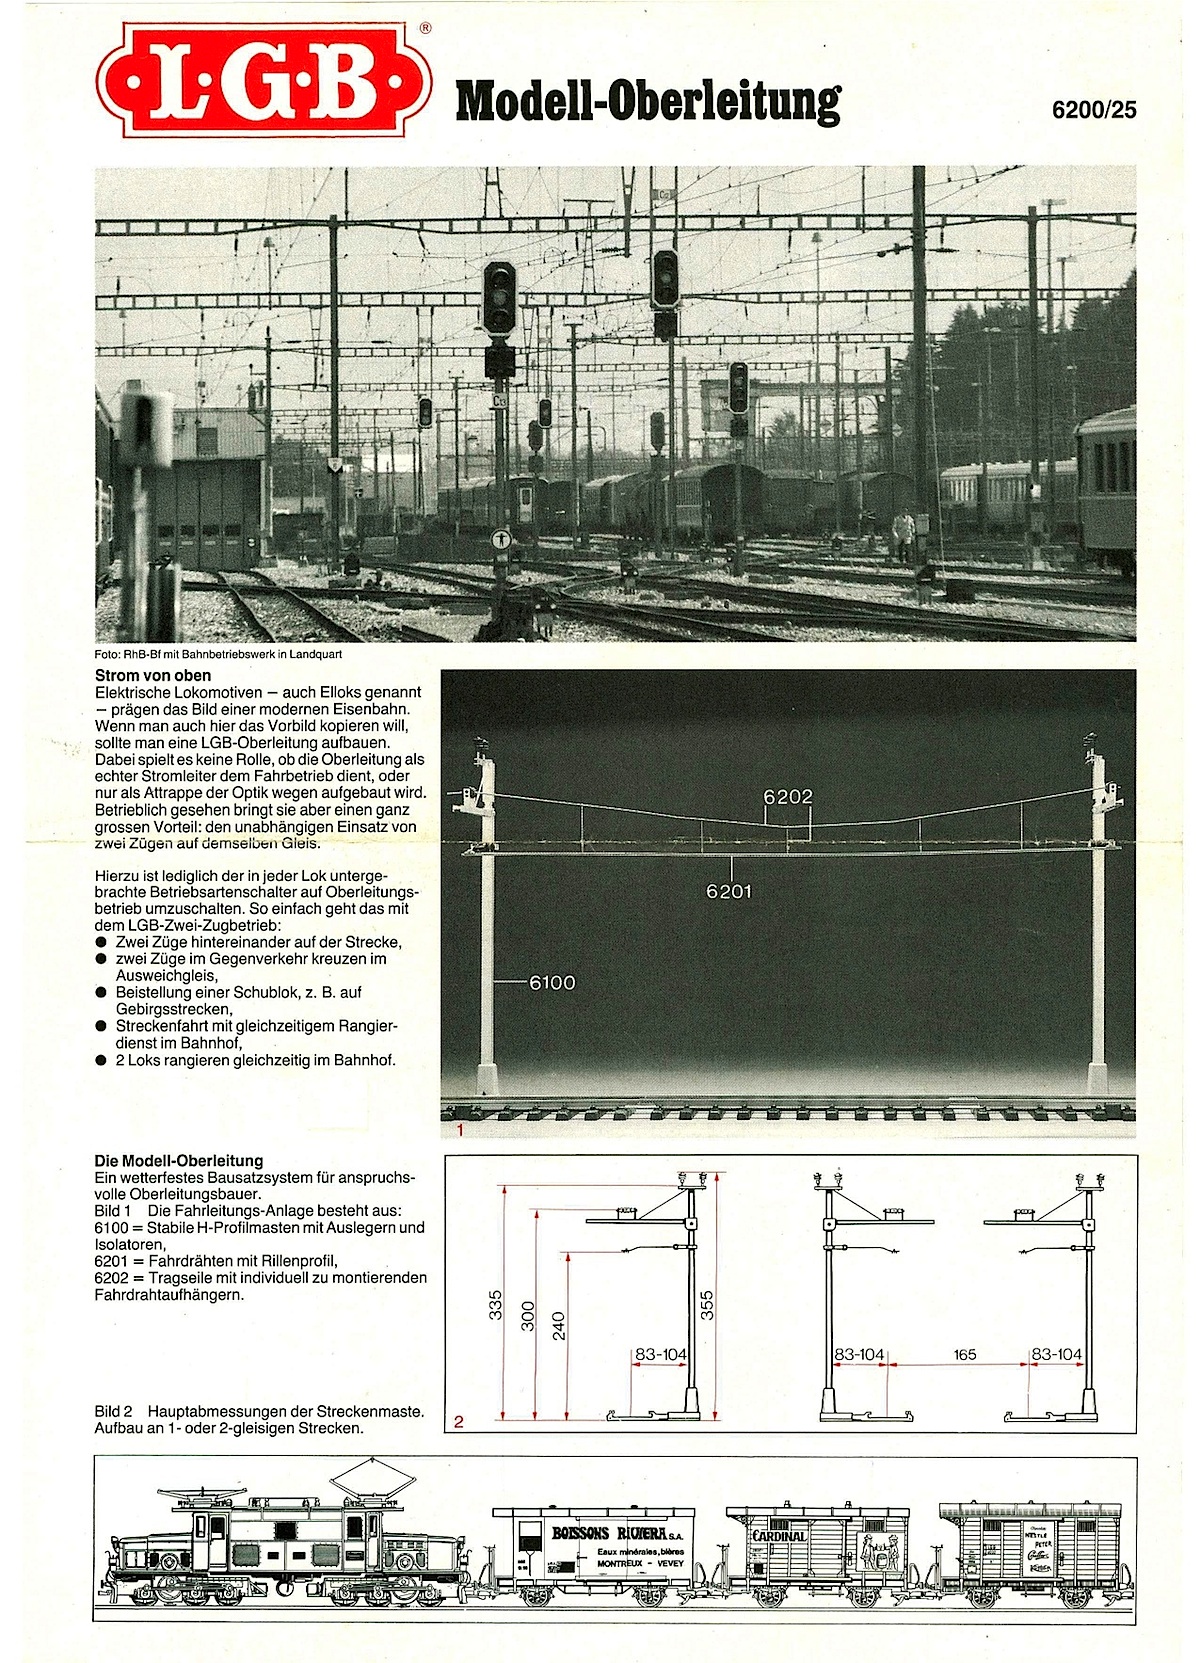 LGB Betriebsanleitung Modell-Oberleitung (Model Catenary System Instructions) 1987